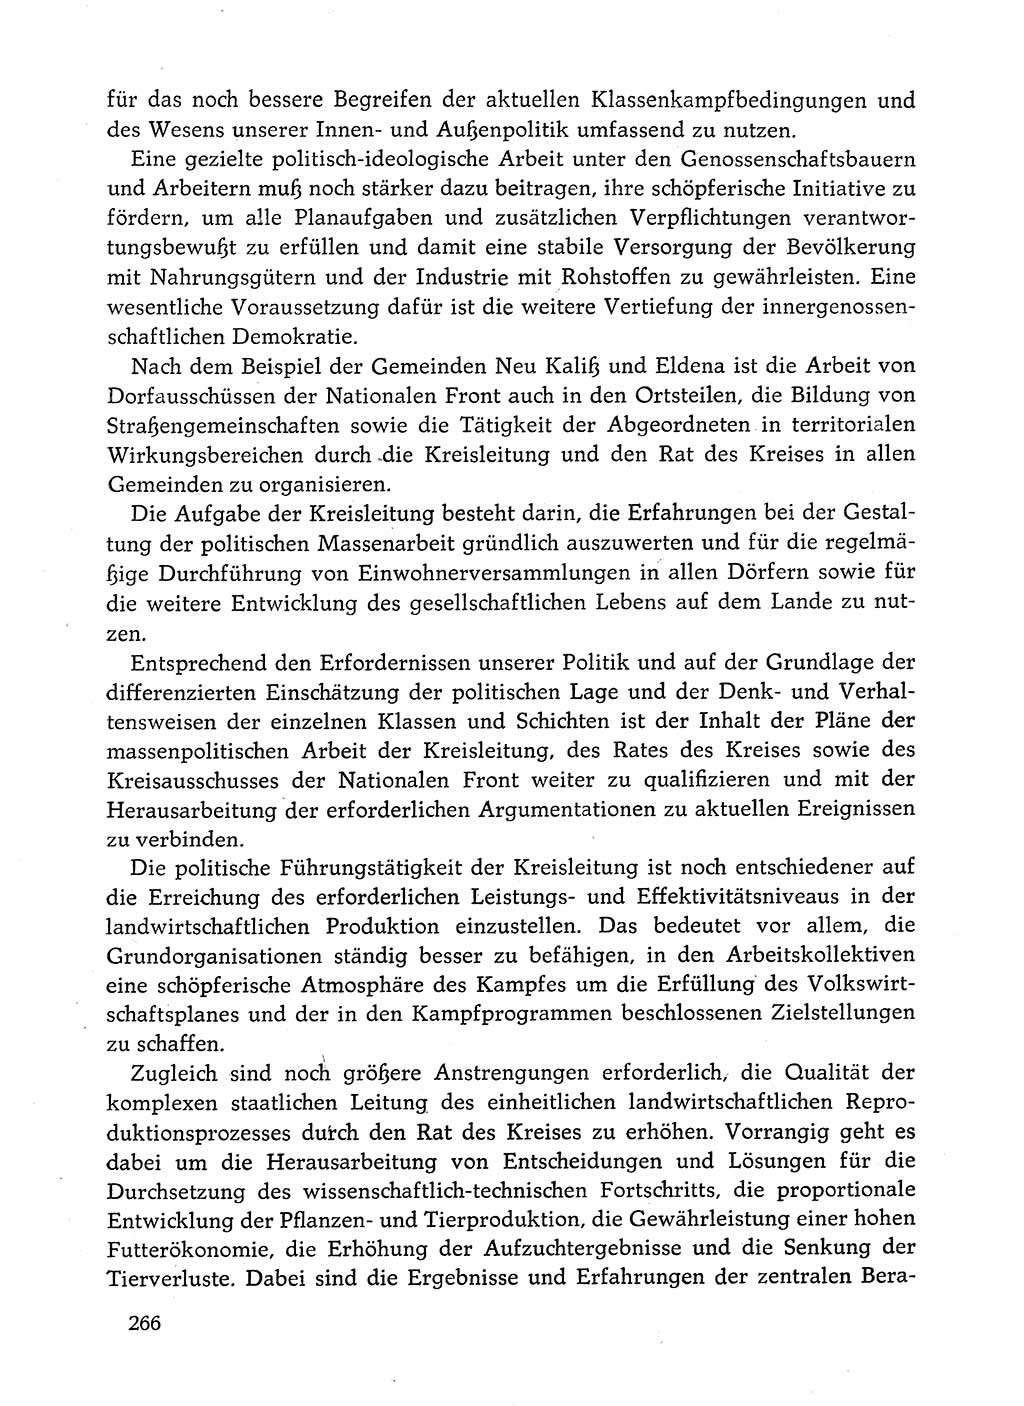 Dokumente der Sozialistischen Einheitspartei Deutschlands (SED) [Deutsche Demokratische Republik (DDR)] 1982-1983, Seite 266 (Dok. SED DDR 1982-1983, S. 266)